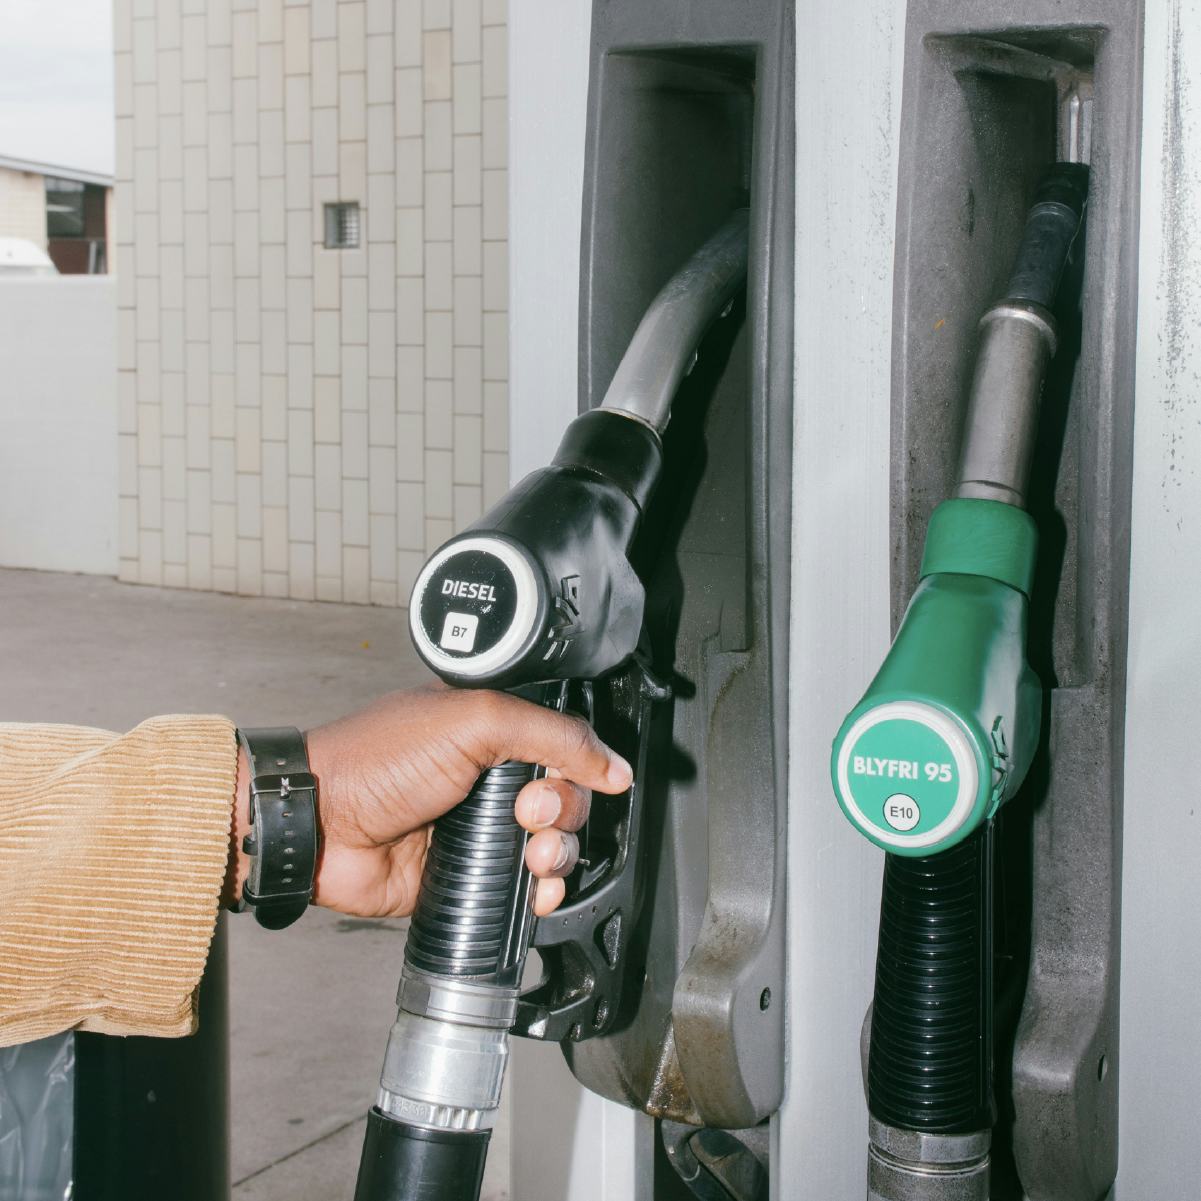 En medarbejder skal til at tanke sin bil op og betale for brændstof